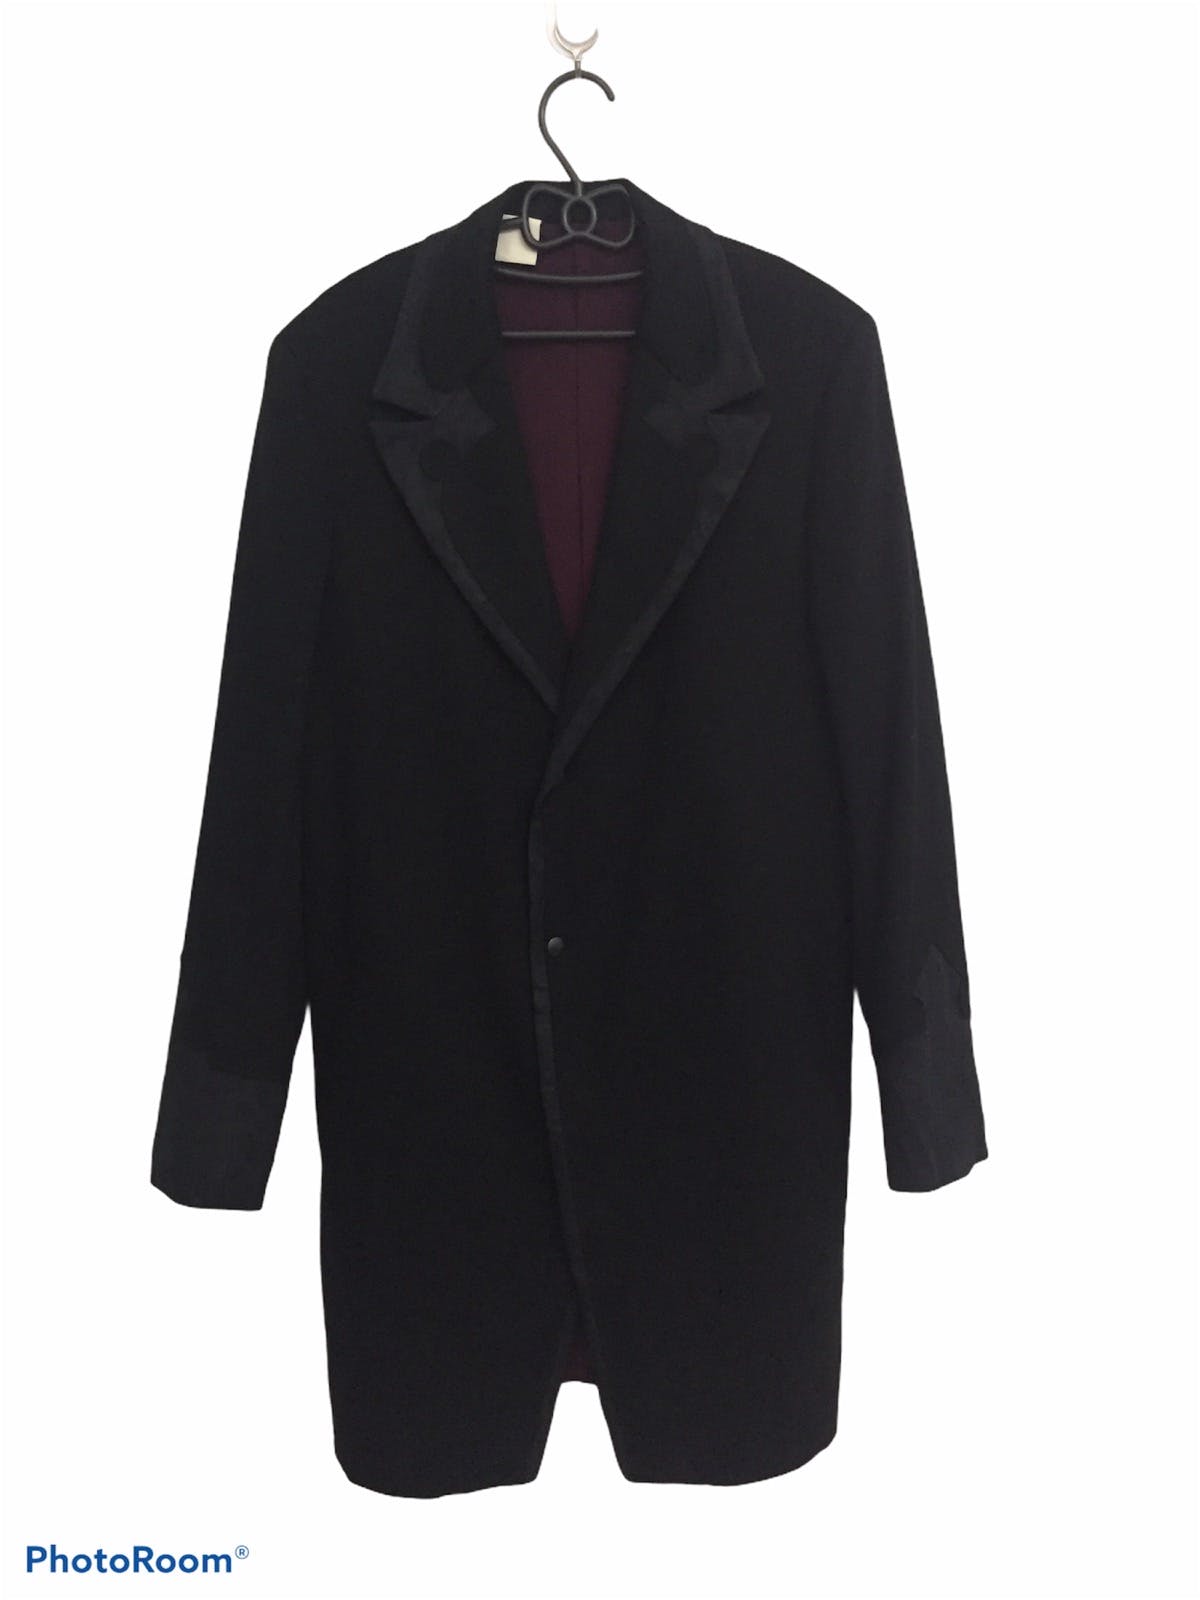 N.Hoolywood Turfting Stitch Double Collar Long Jacket Coat - 1